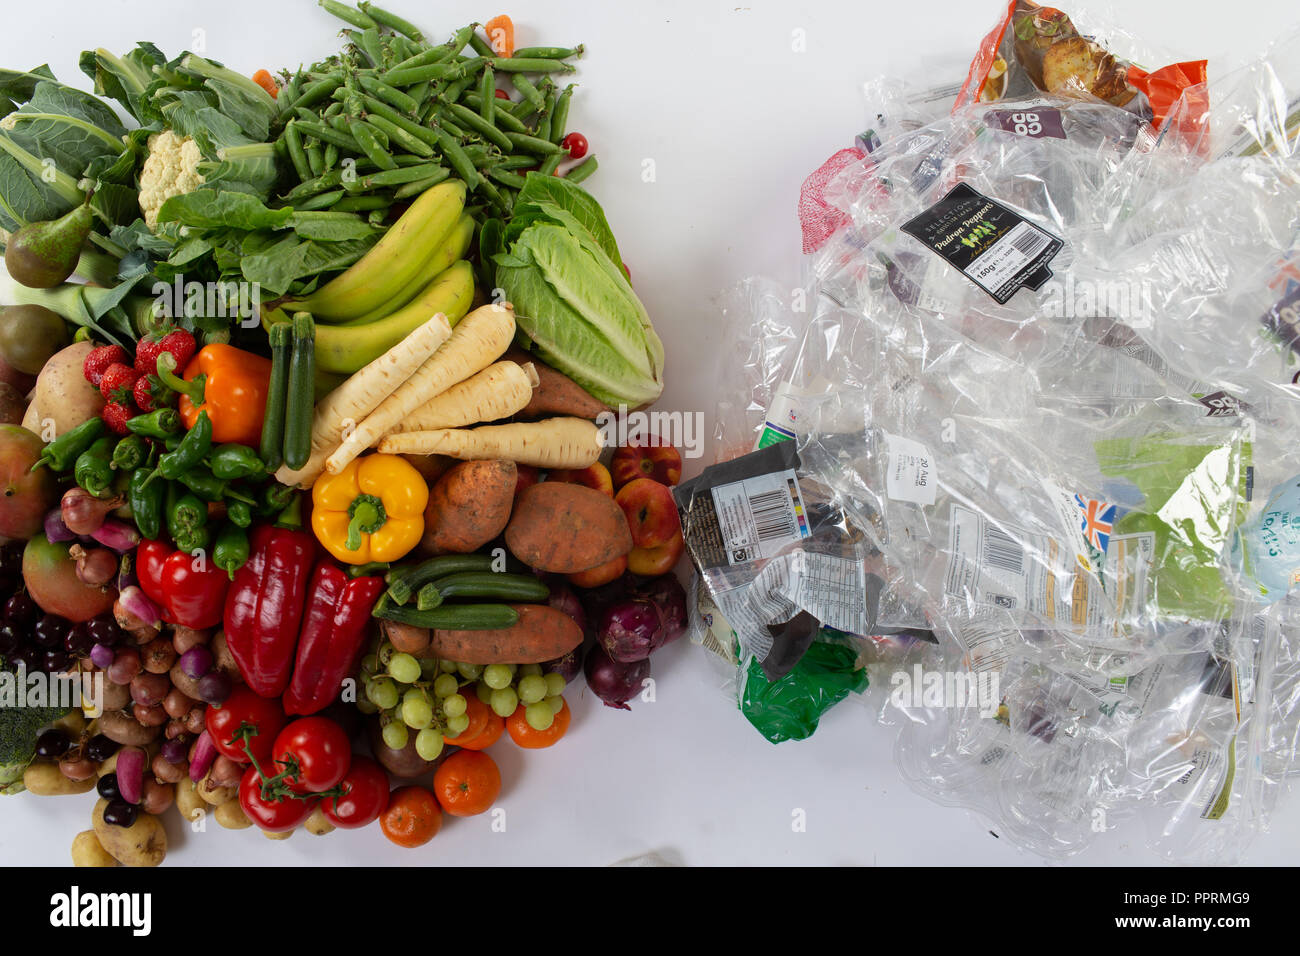 L'emballage en plastique sur les fruits et légumes au Royaume-Uni Banque D'Images